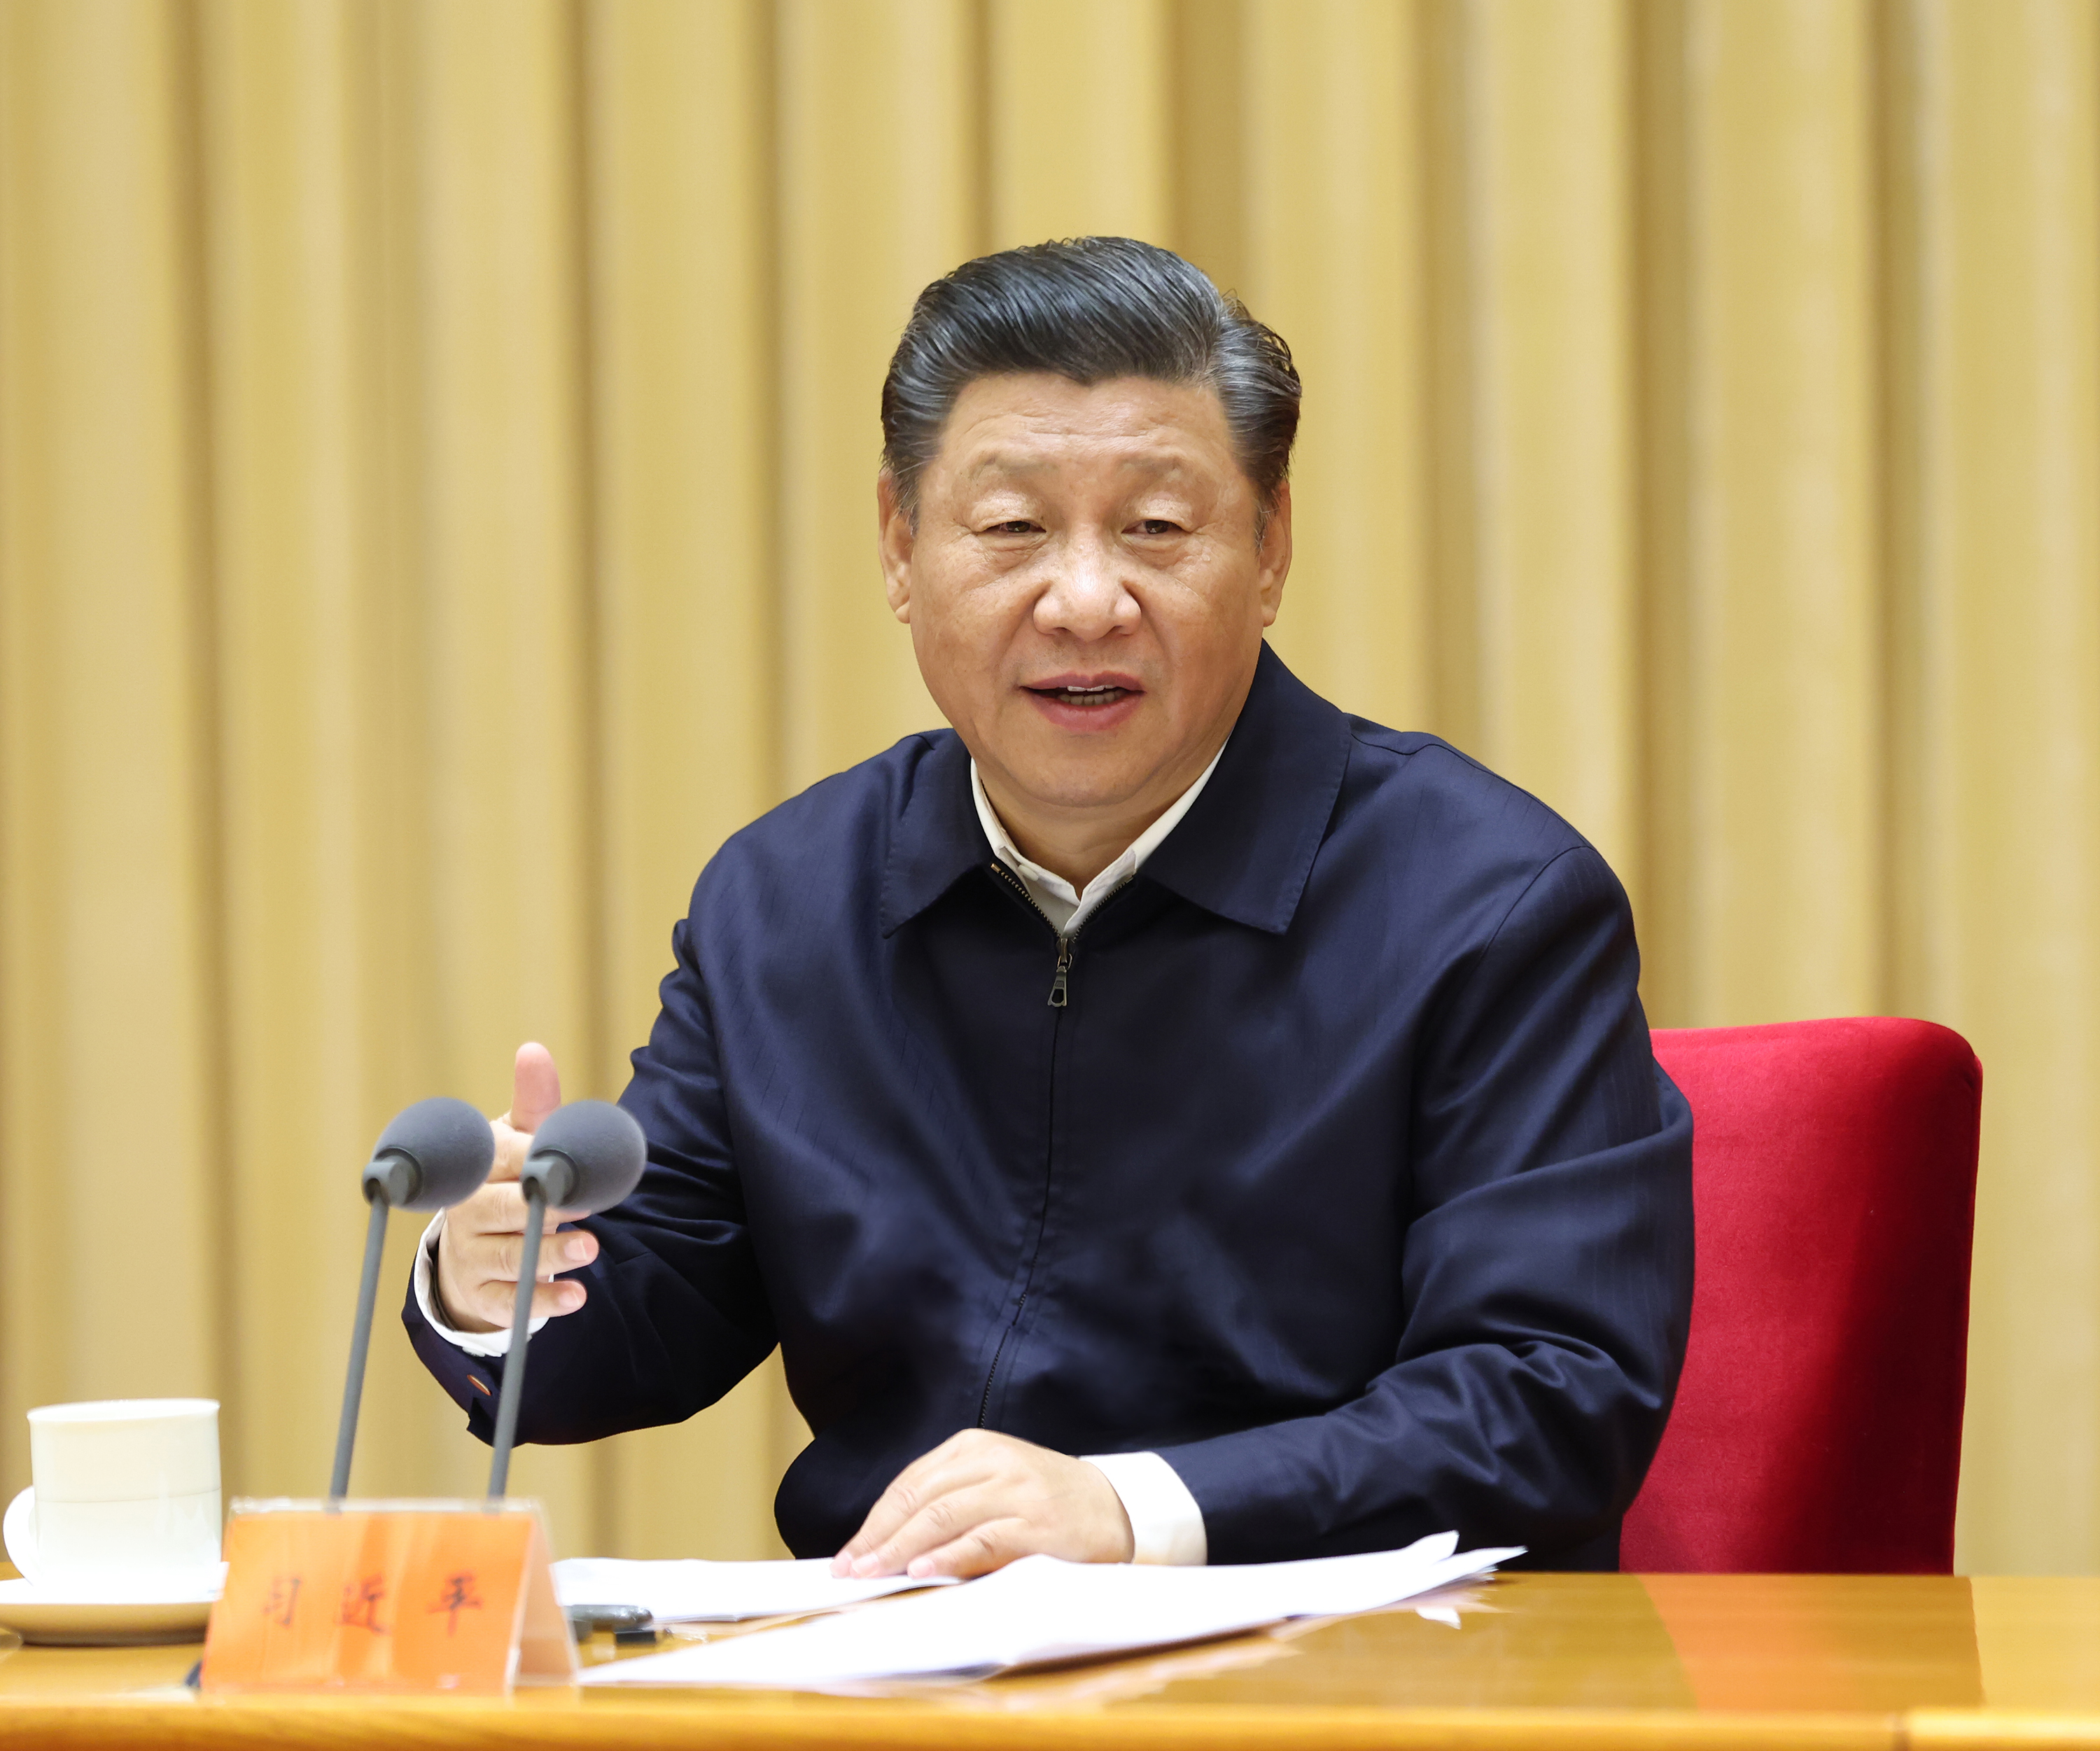 11月16日至17日，中央全面依法治国工作会议在北京召开。中共中央总书记、国家主席、中央军委主席习近平出席会议并发表重要讲话。